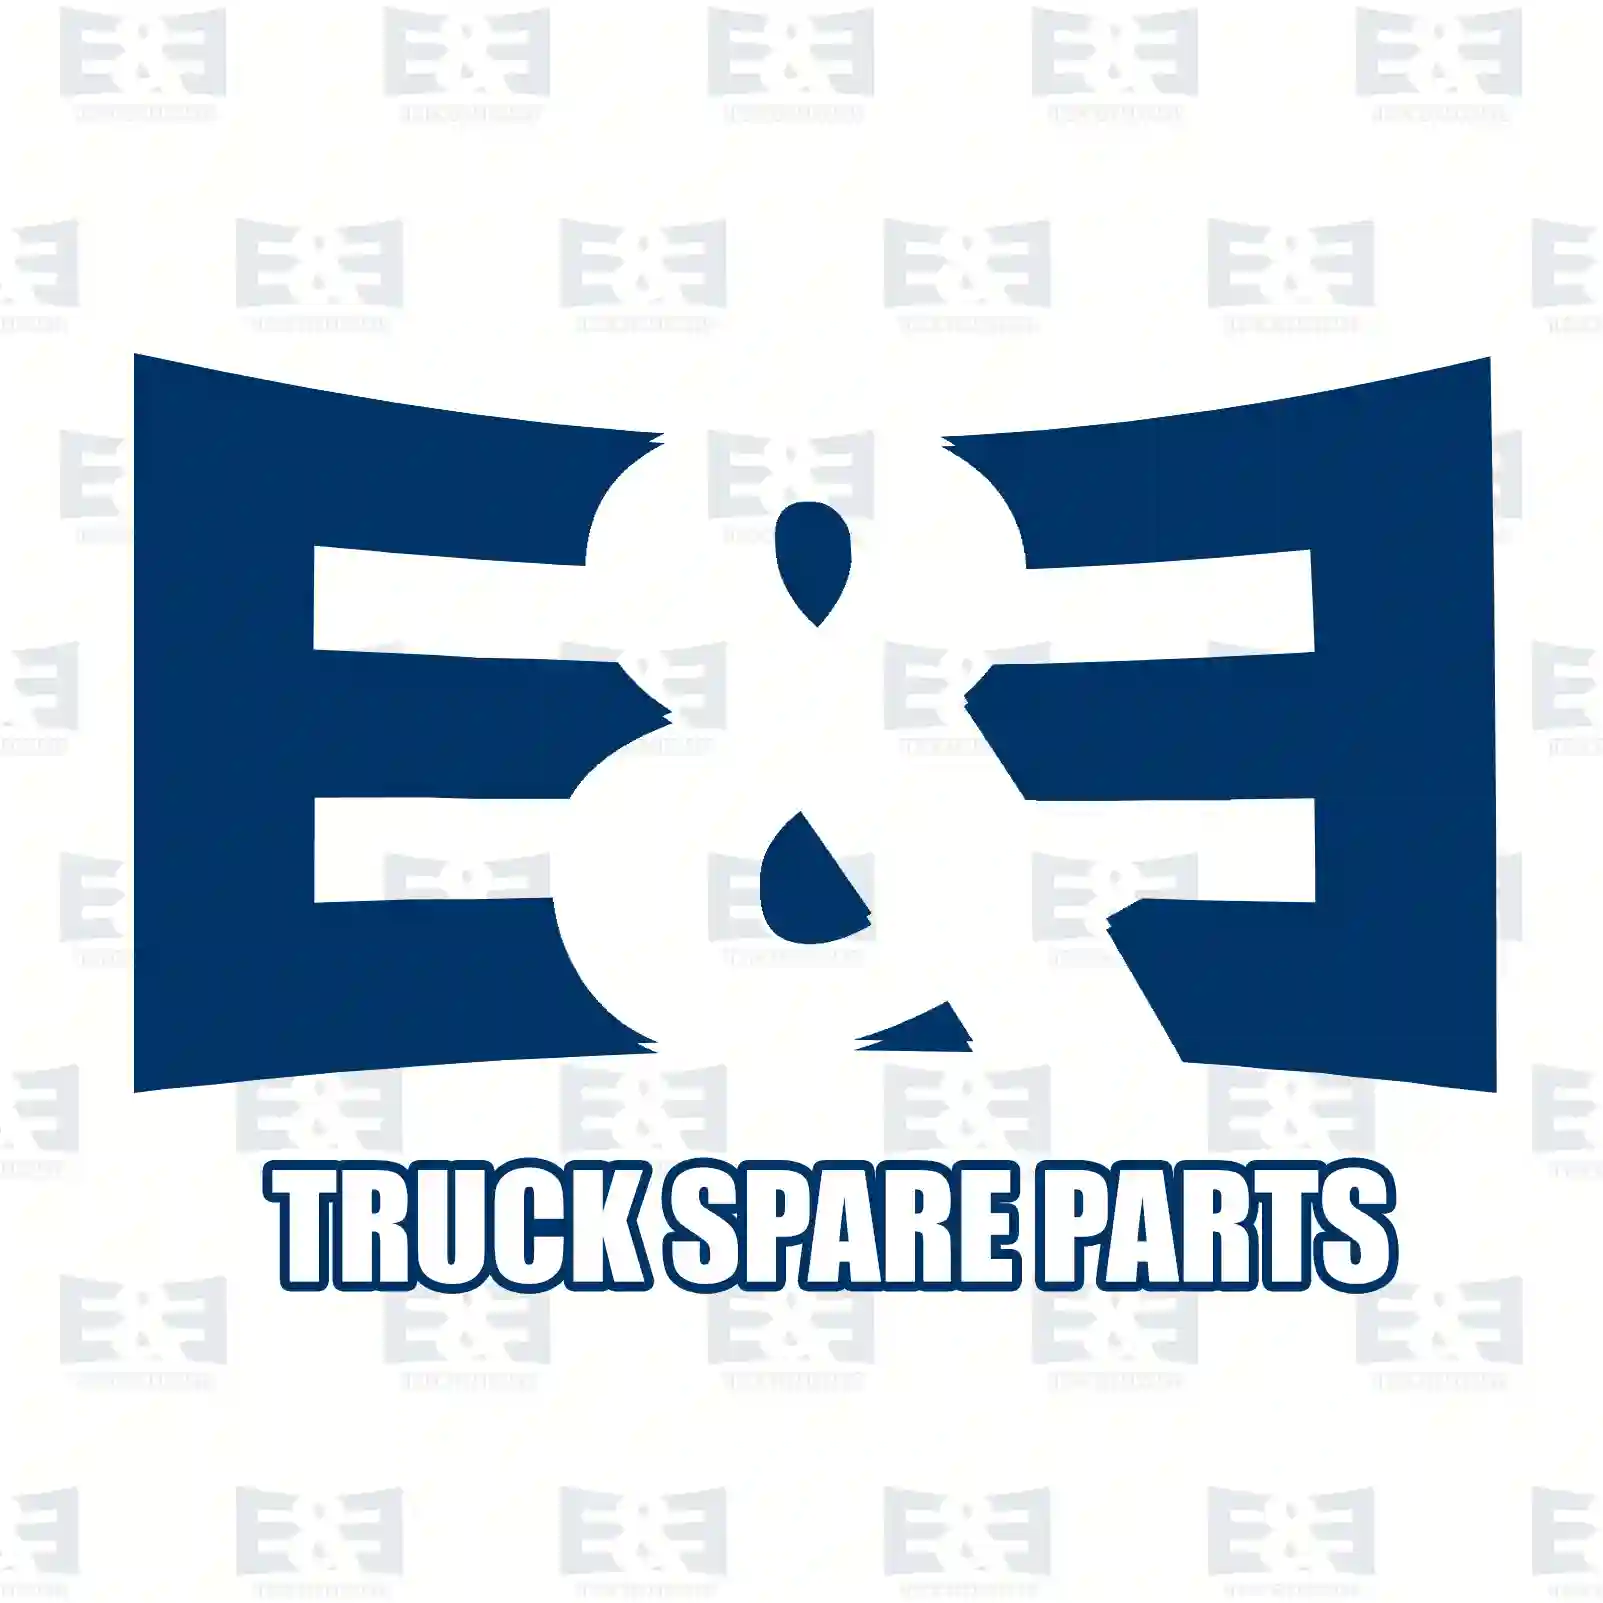 Wiper nozzle, 2E2280008, 0622532, 622532, 80003685 ||  2E2280008 E&E Truck Spare Parts | Truck Spare Parts, Auotomotive Spare Parts Wiper nozzle, 2E2280008, 0622532, 622532, 80003685 ||  2E2280008 E&E Truck Spare Parts | Truck Spare Parts, Auotomotive Spare Parts